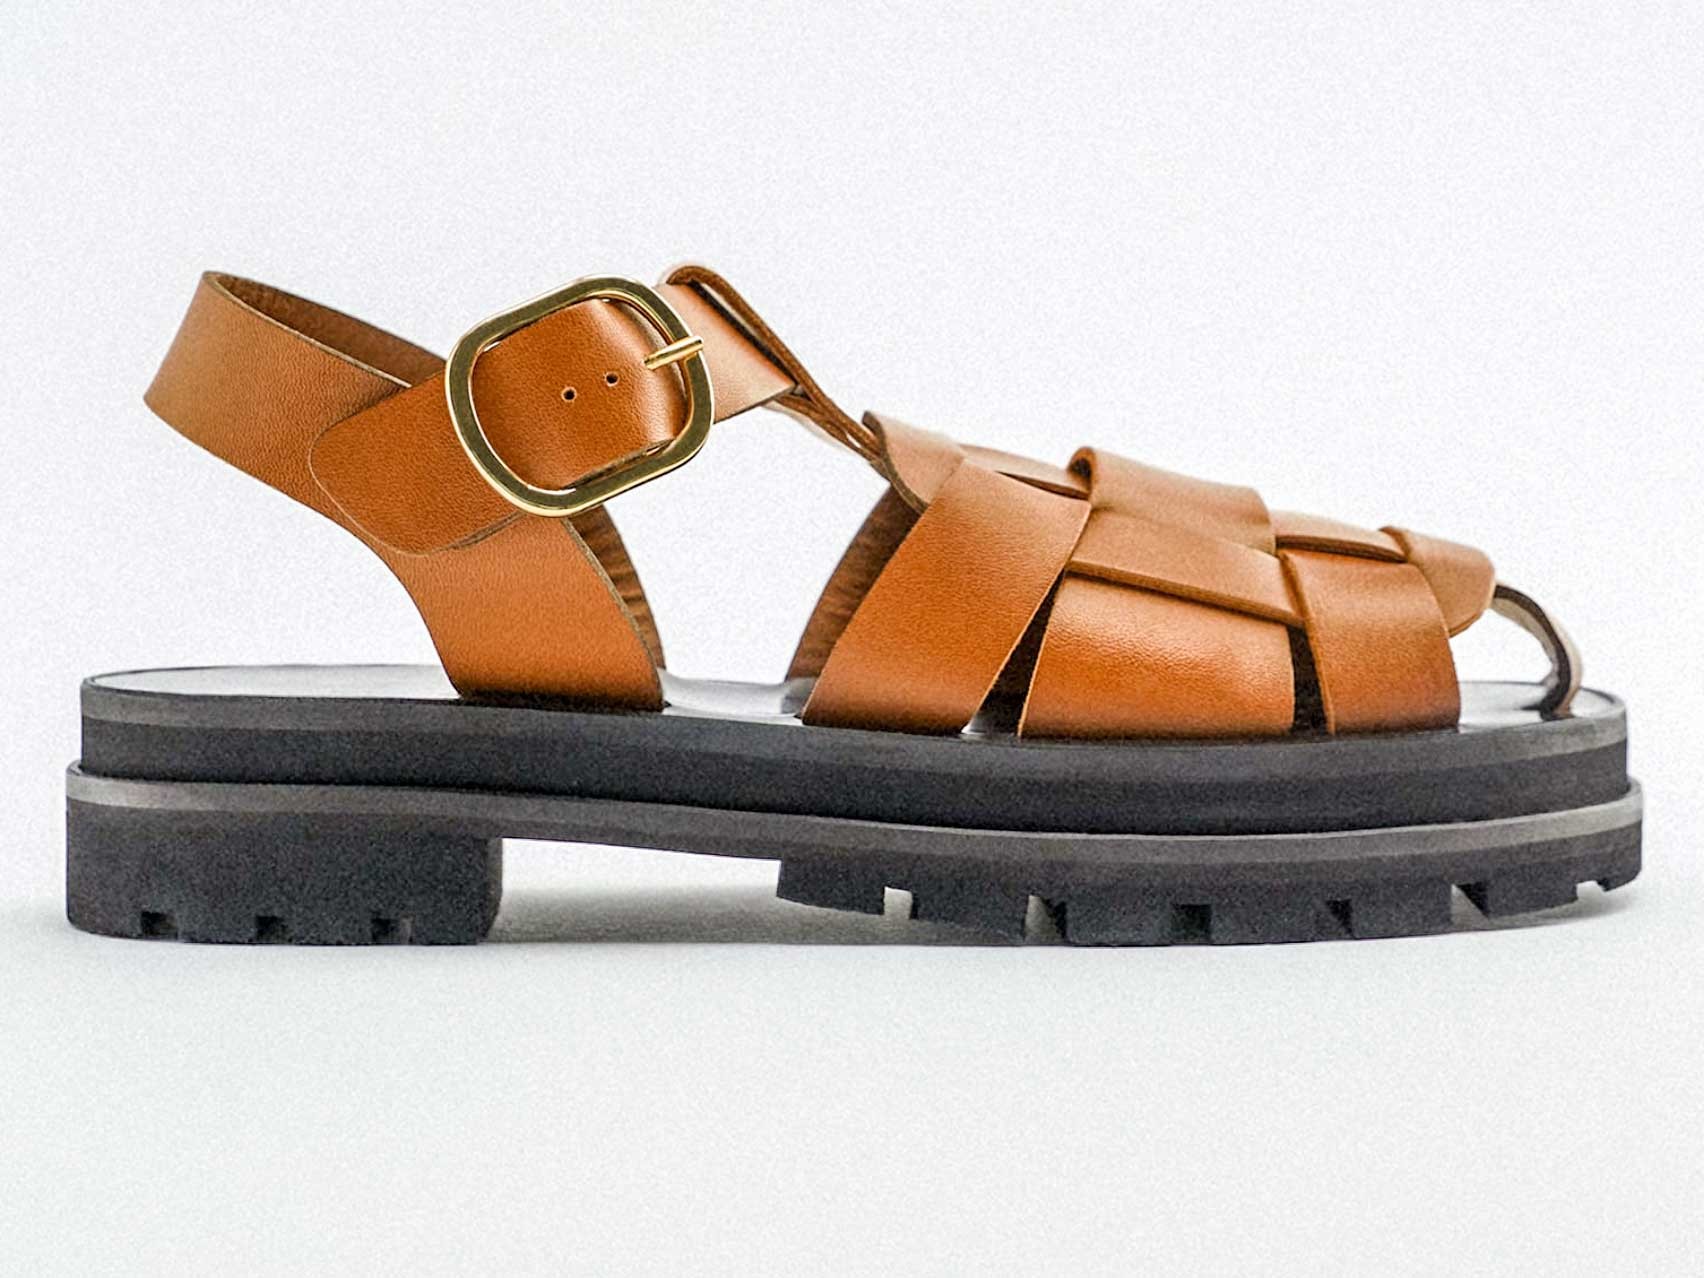 Las cangrejeras o franciscanas, ¿serán las sandalias favoritas del verano?